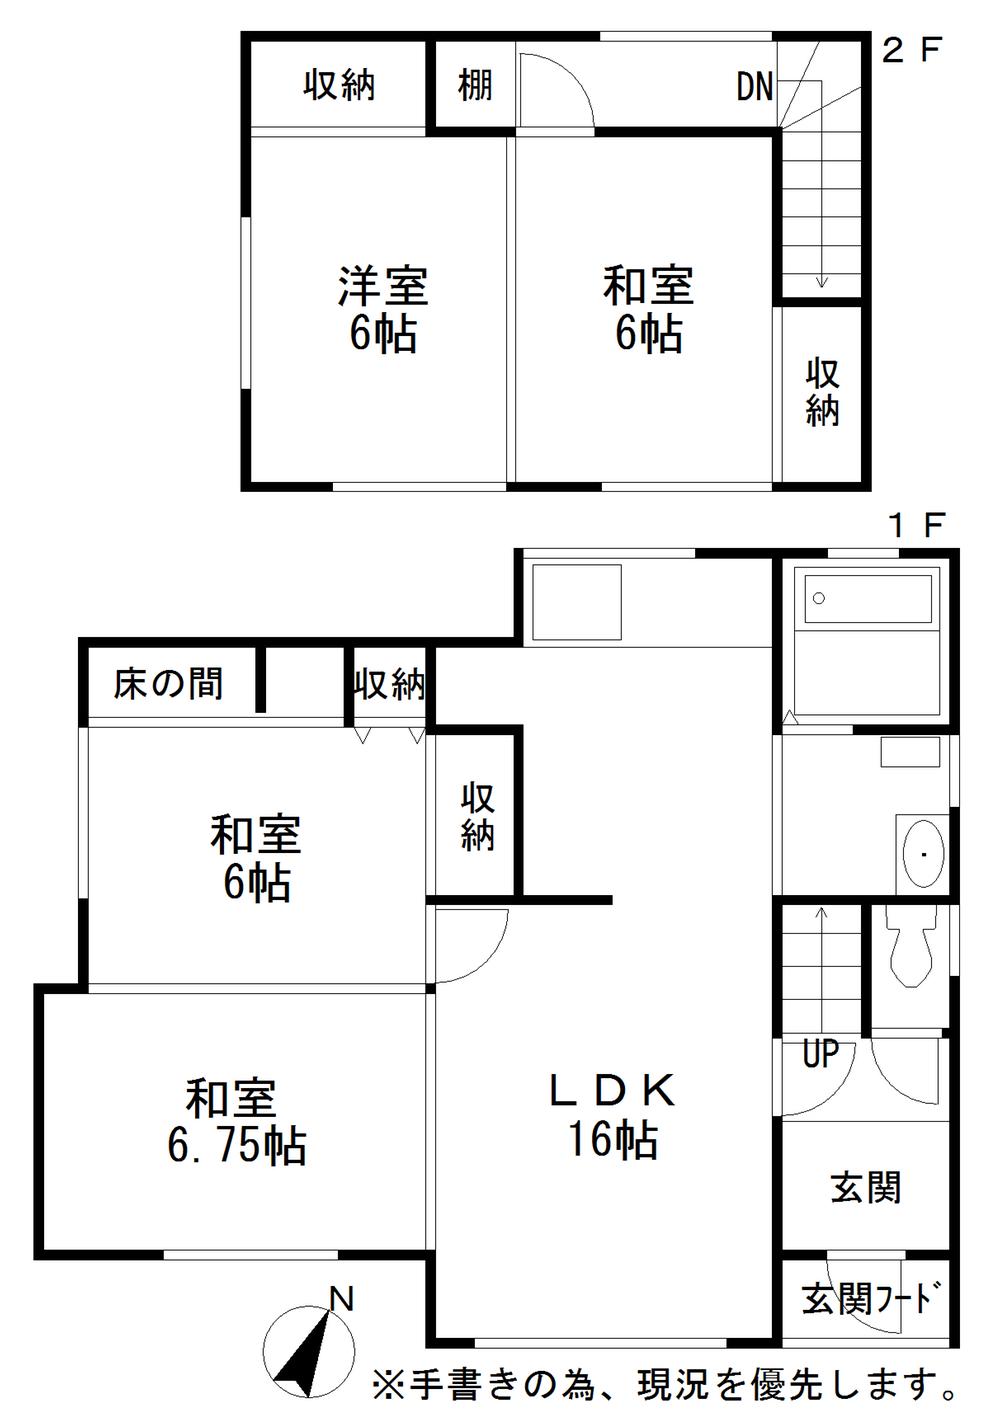 Floor plan. 8 million yen, 4LDK, Land area 220.72 sq m , Building area 93.55 sq m